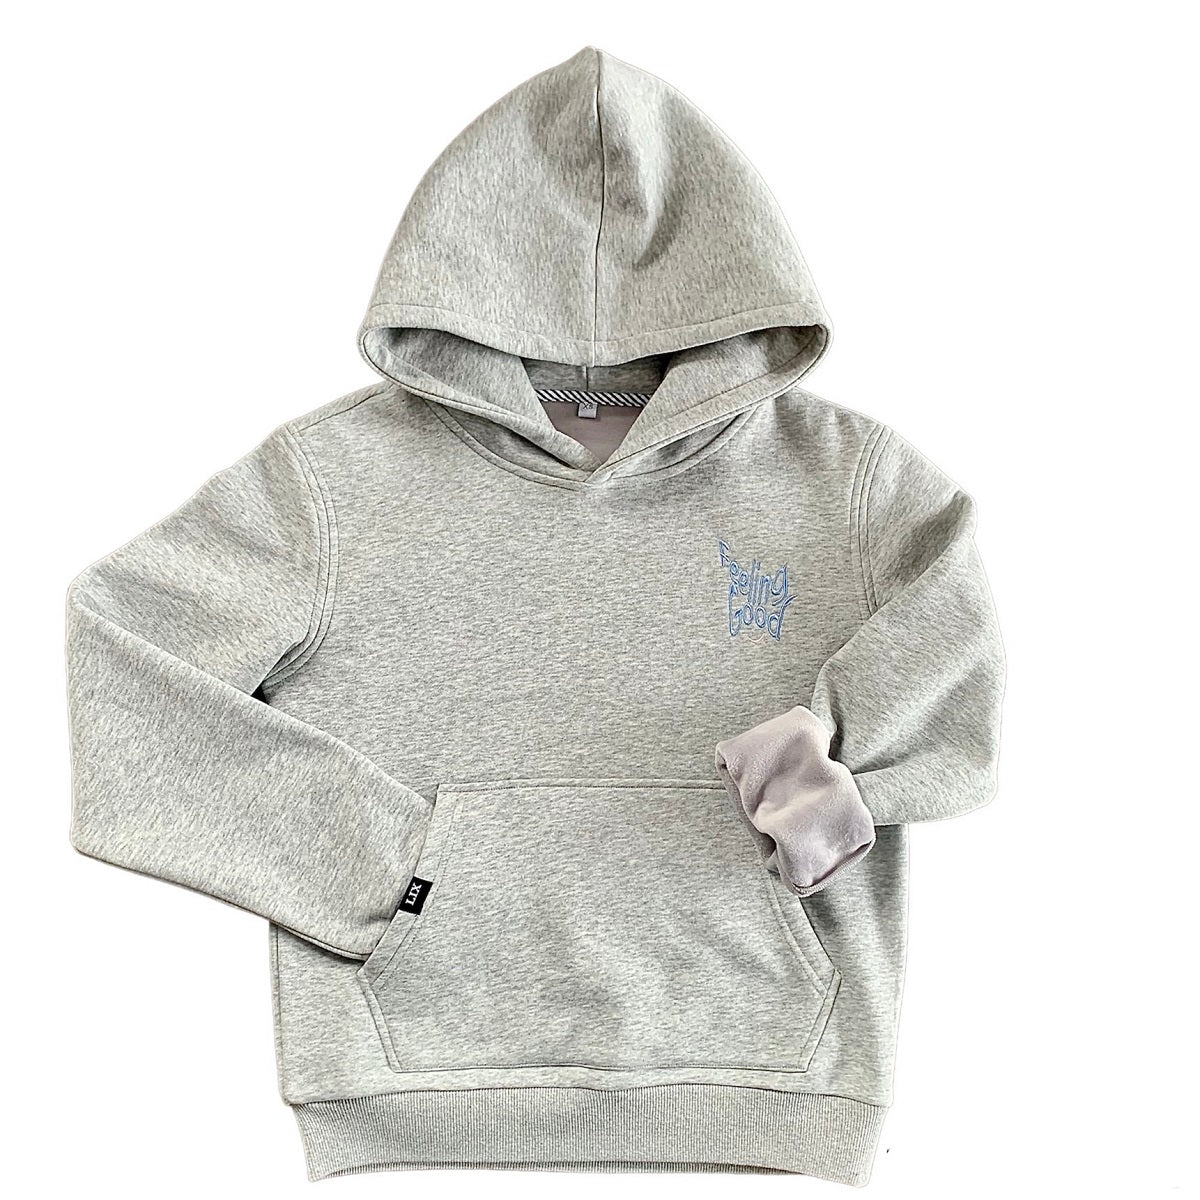 Lix design hoodie, coton ouaté, conçu au Québec. Épais et chaud, plus confortable, tissu qualité.